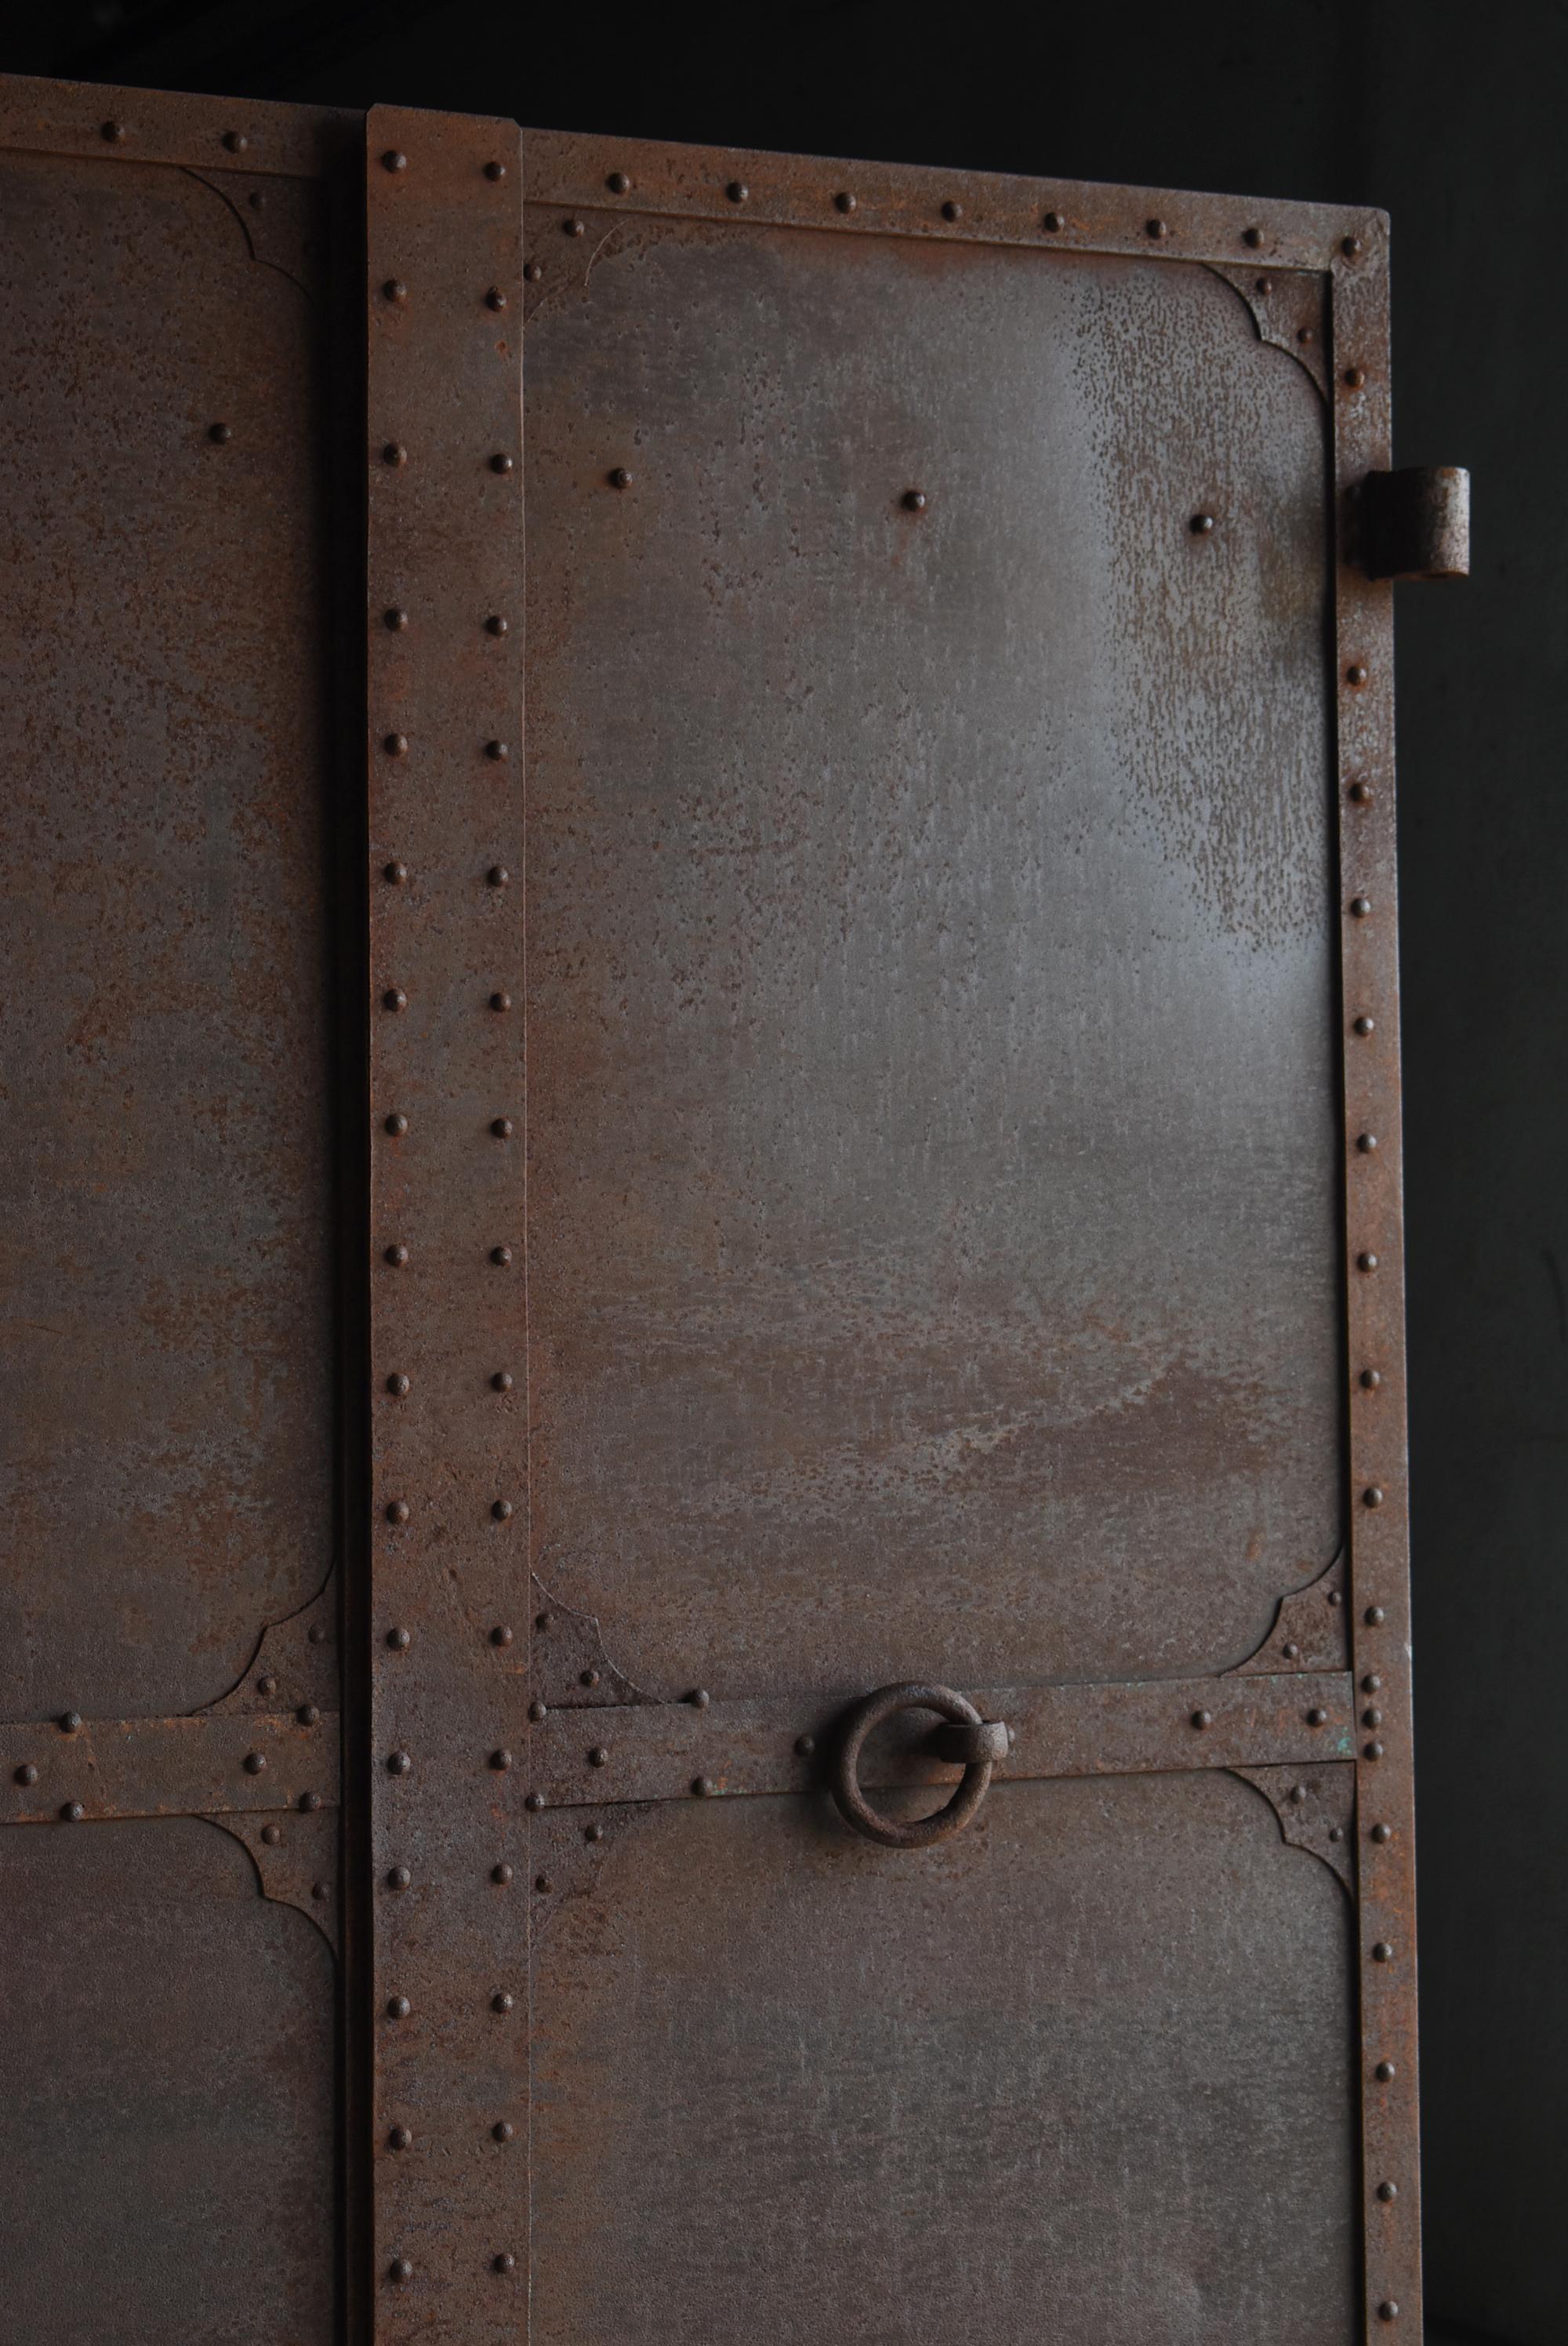 Japanese Antique Iron Double Door 1860s-1920s / Steel Gate Wabi Sabi For Sale 1